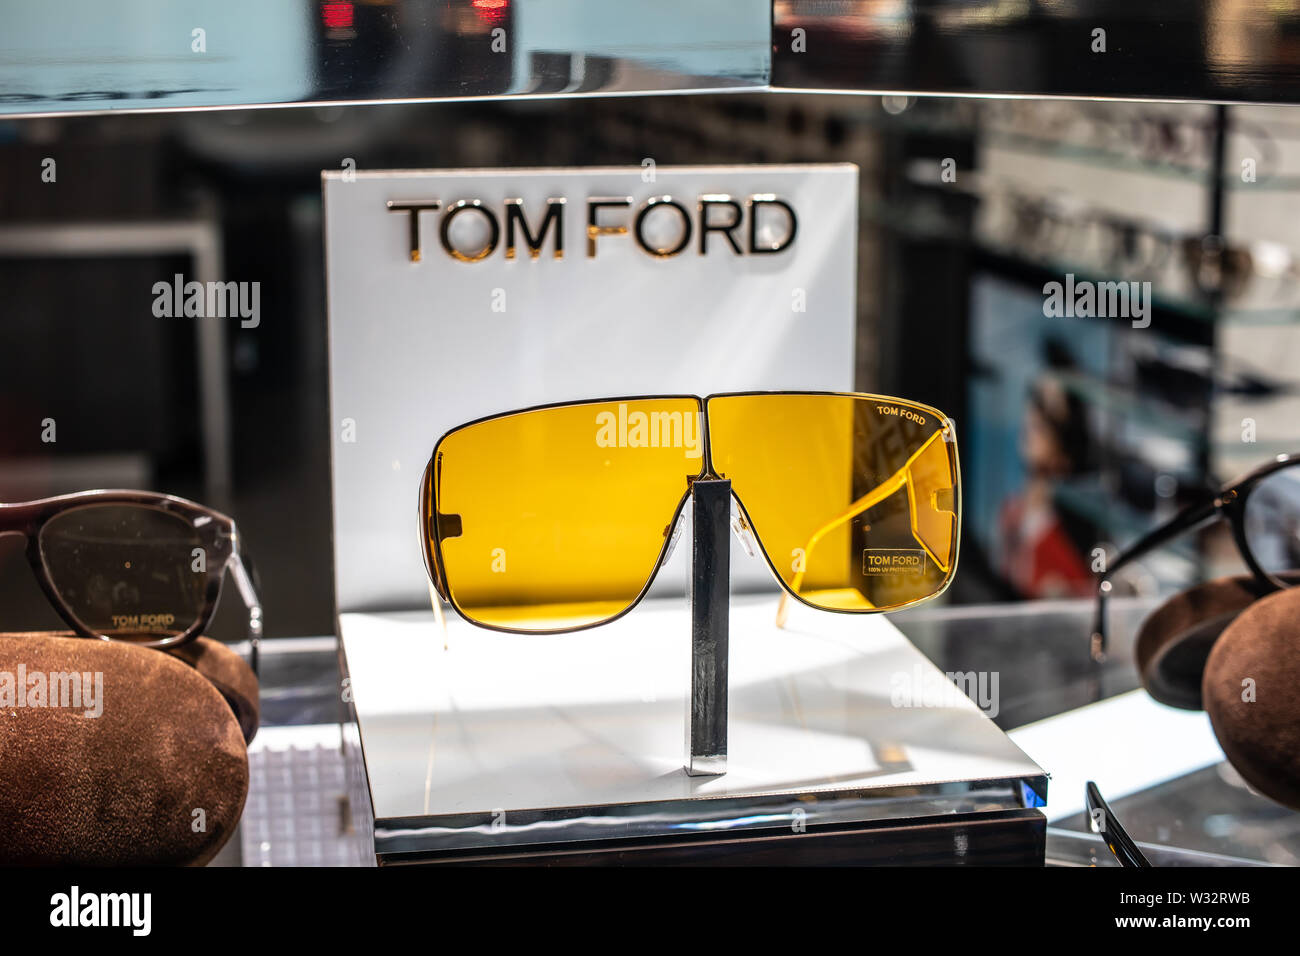 Tom ford sunglasses immagini e fotografie stock ad alta risoluzione - Alamy